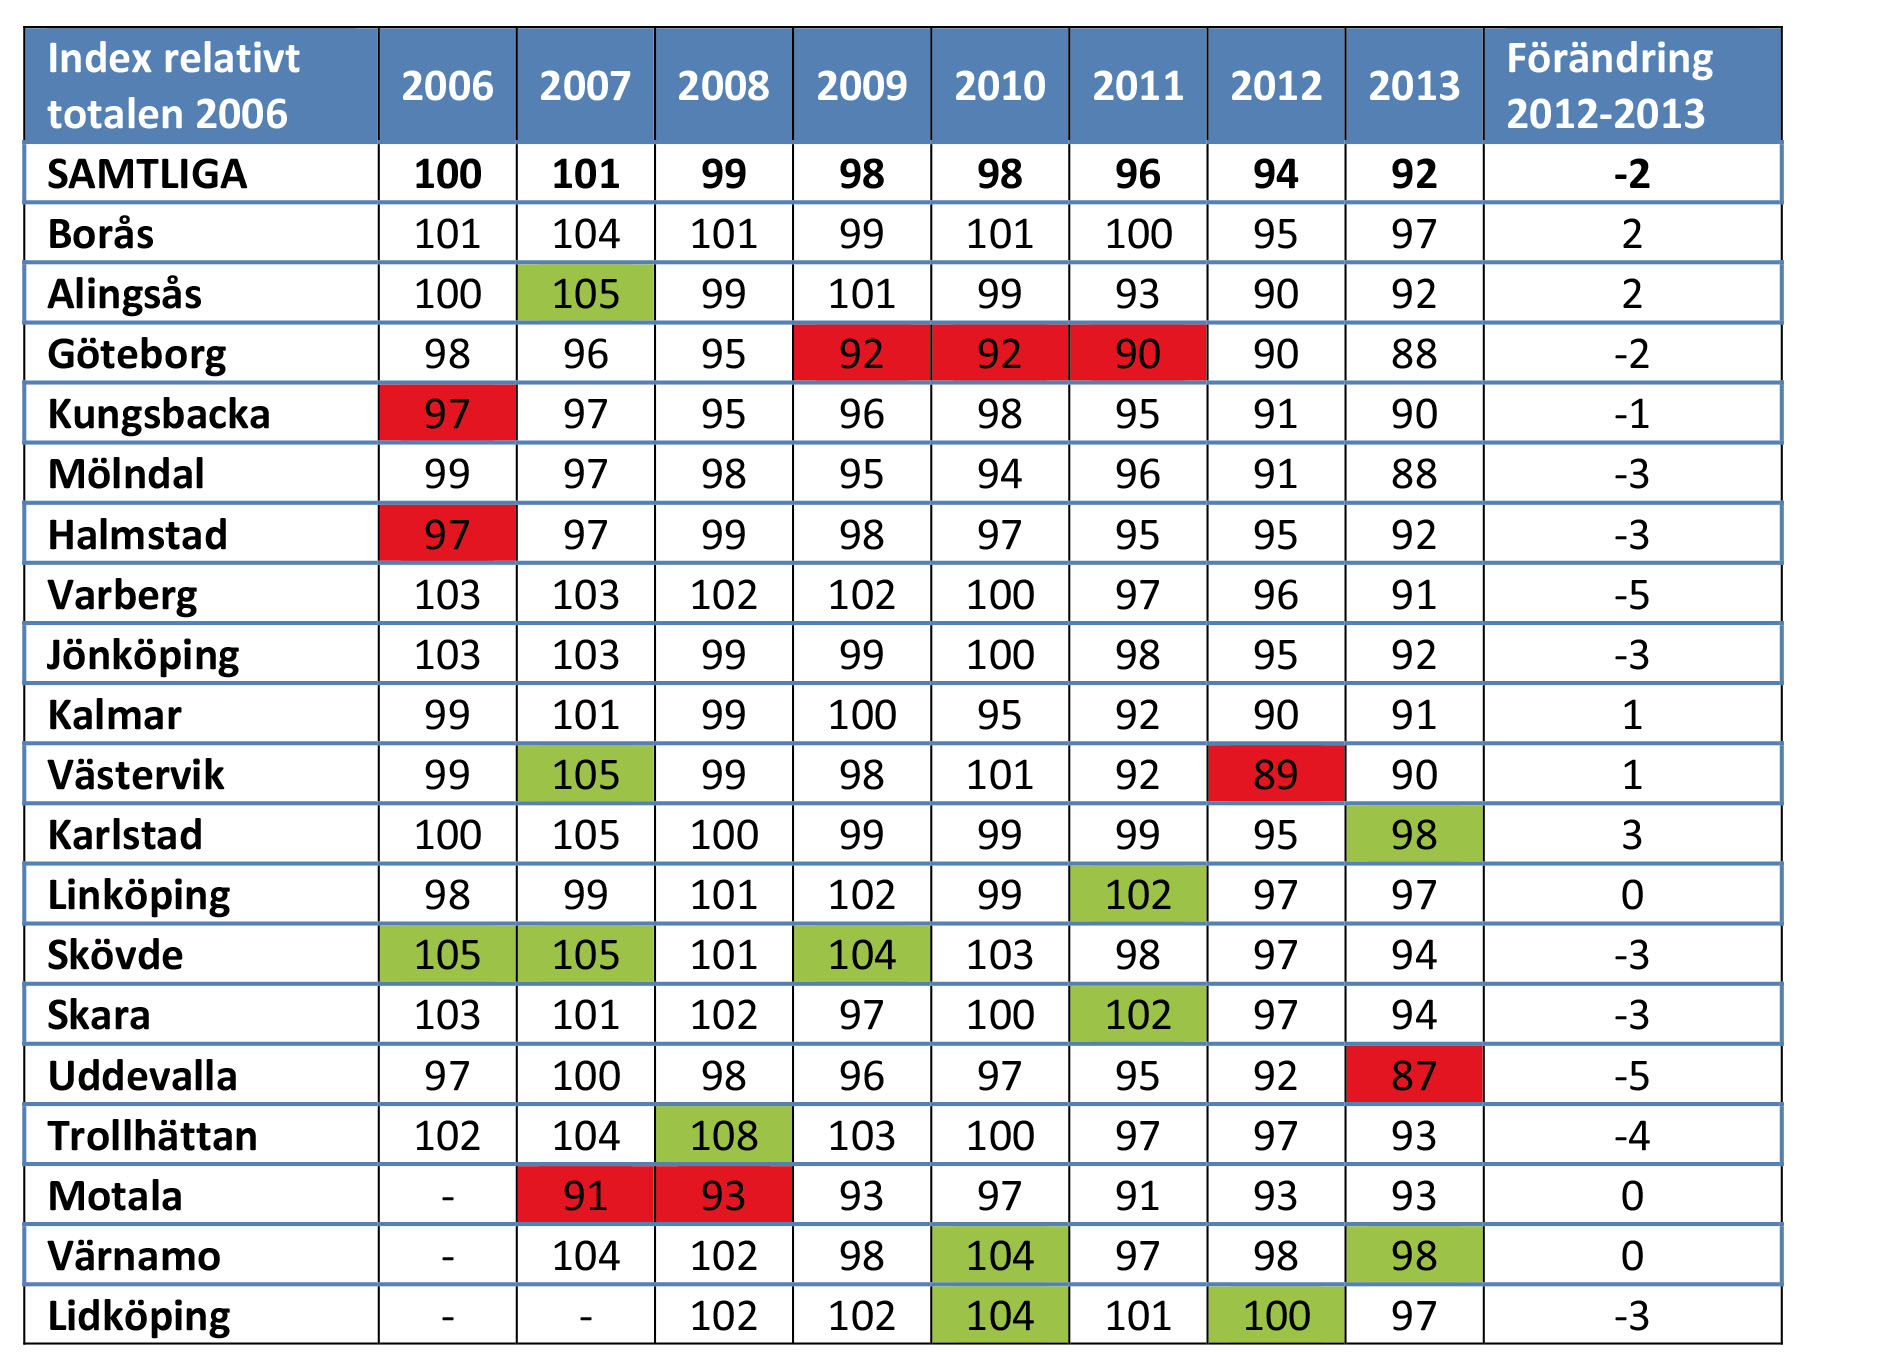 FASTIGHETSFÖRETAGARINDEX 2006-2013 Kommentar: Röda och gröna rutor markerar lägsta respektive högsta indexvärdet för respektive år.